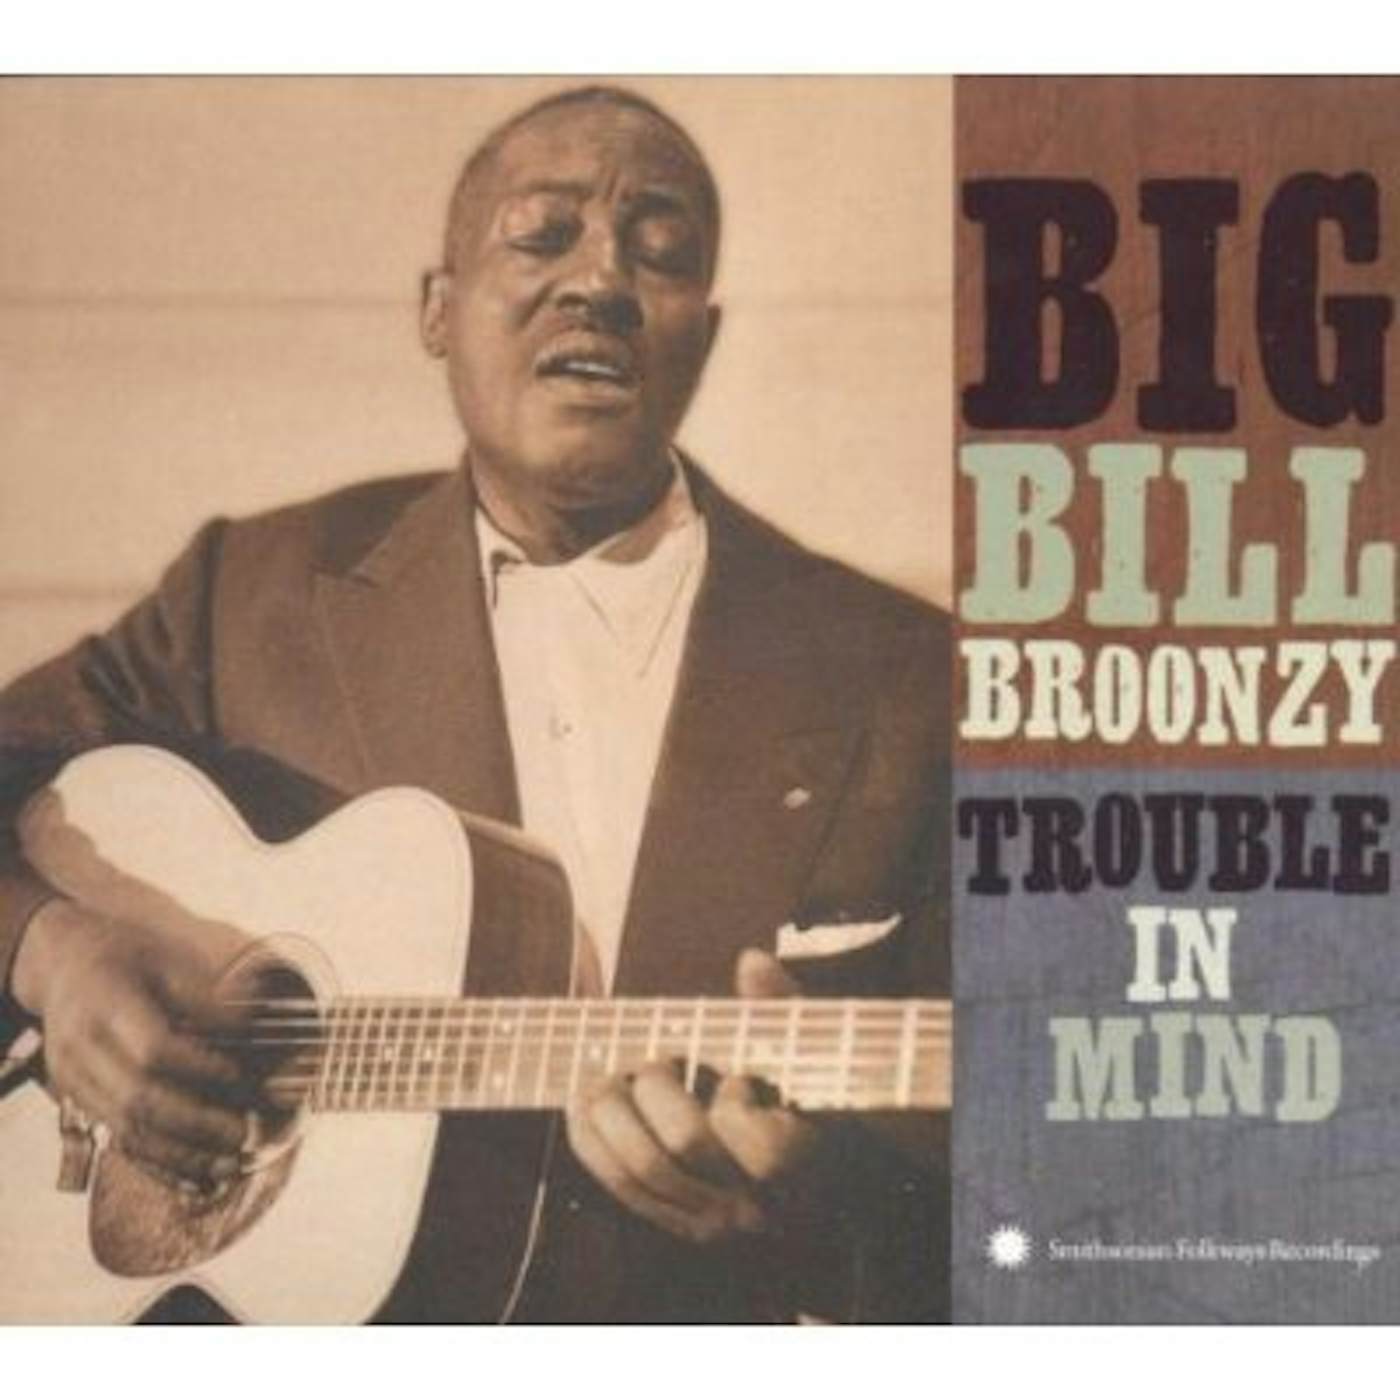 Big Bill Broonzy TROUBLE IN MIND CD